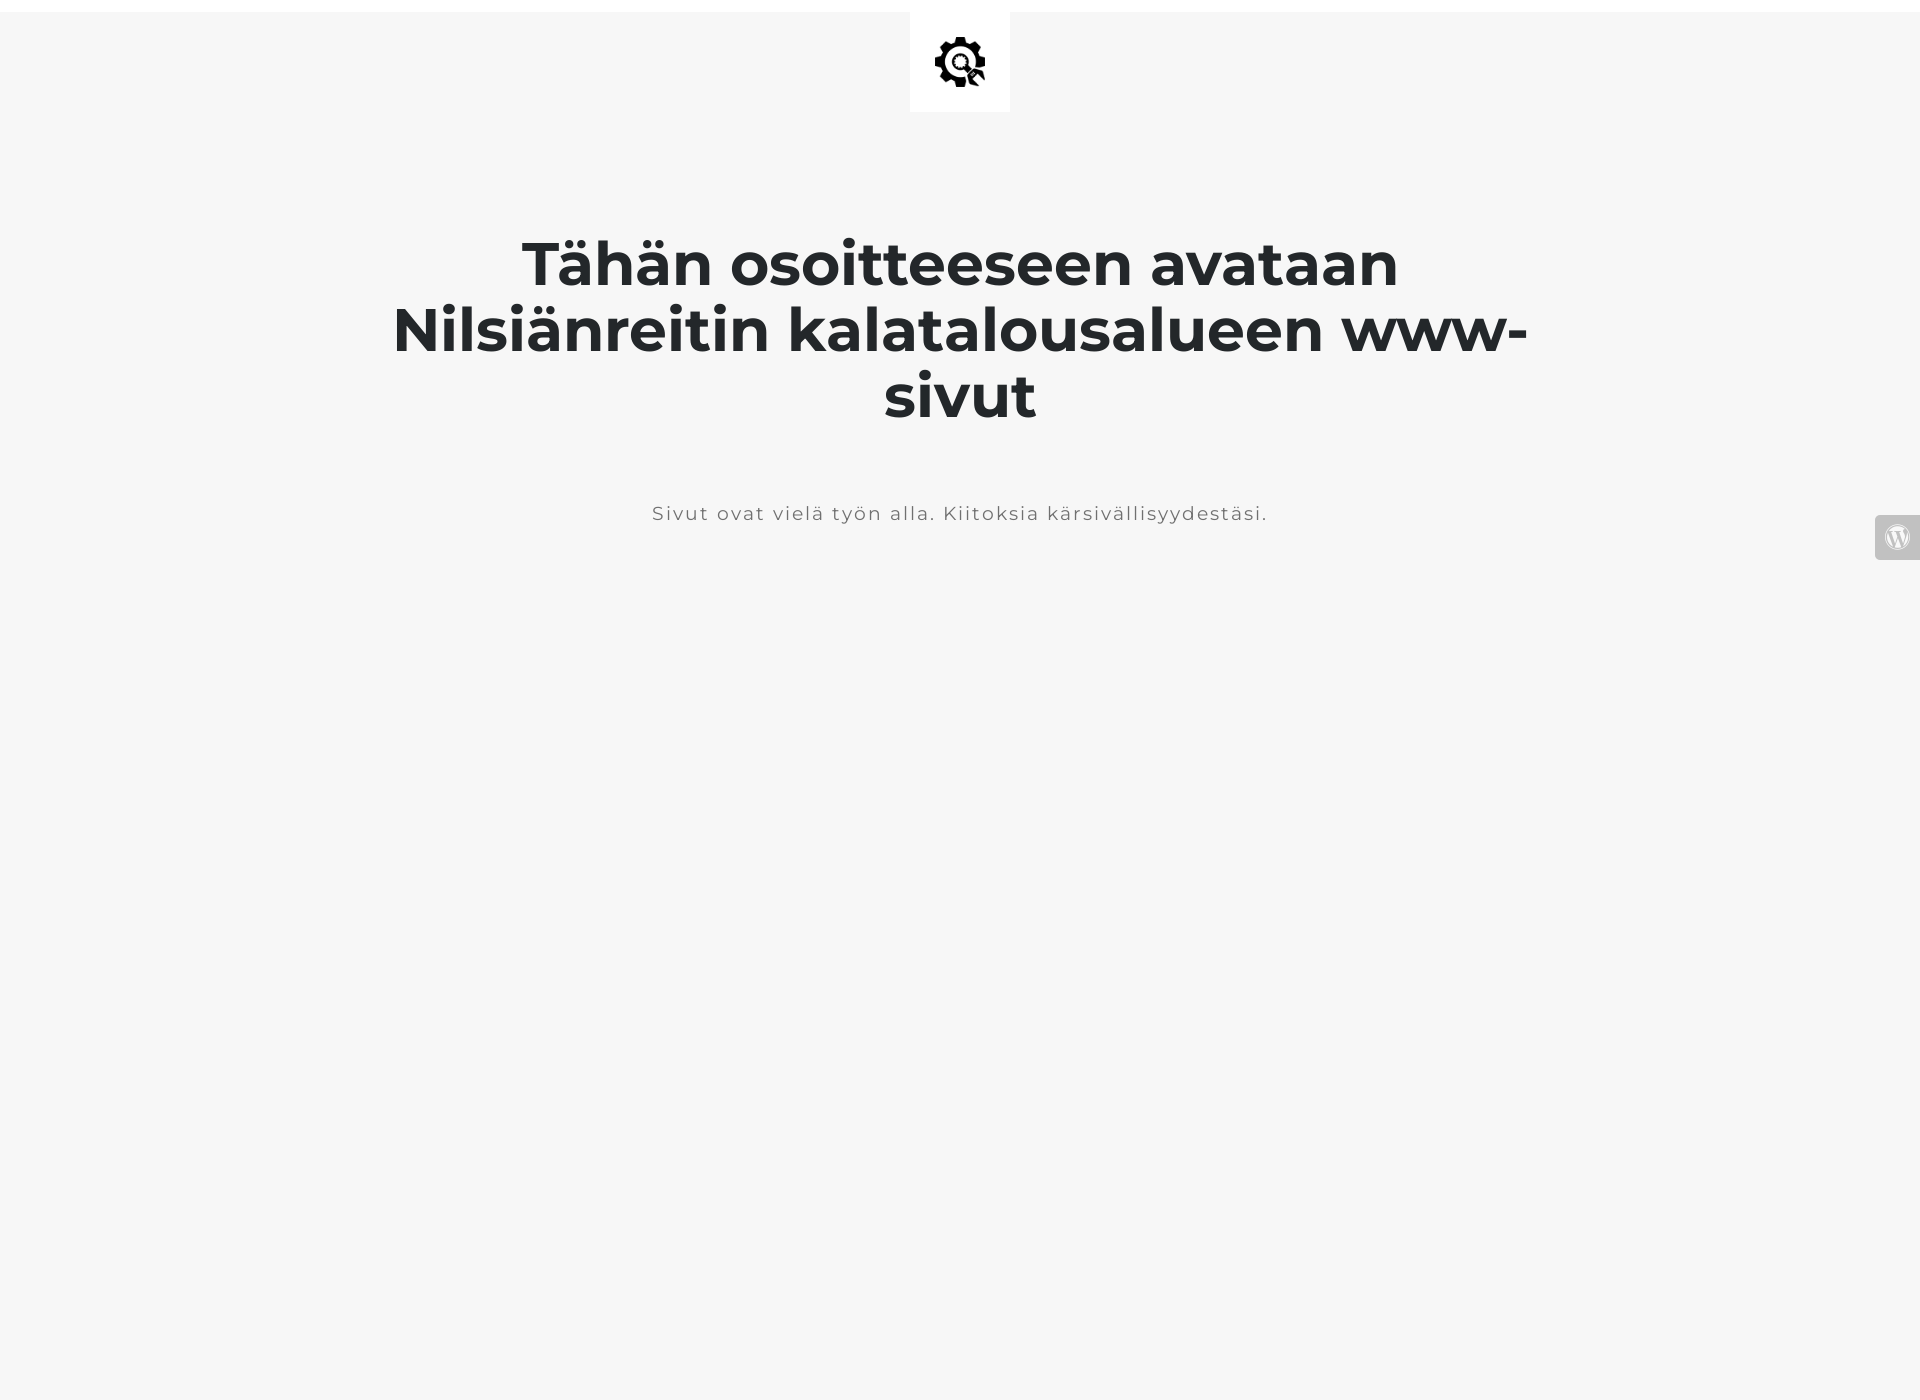 Näyttökuva nilsianreitinkta.fi